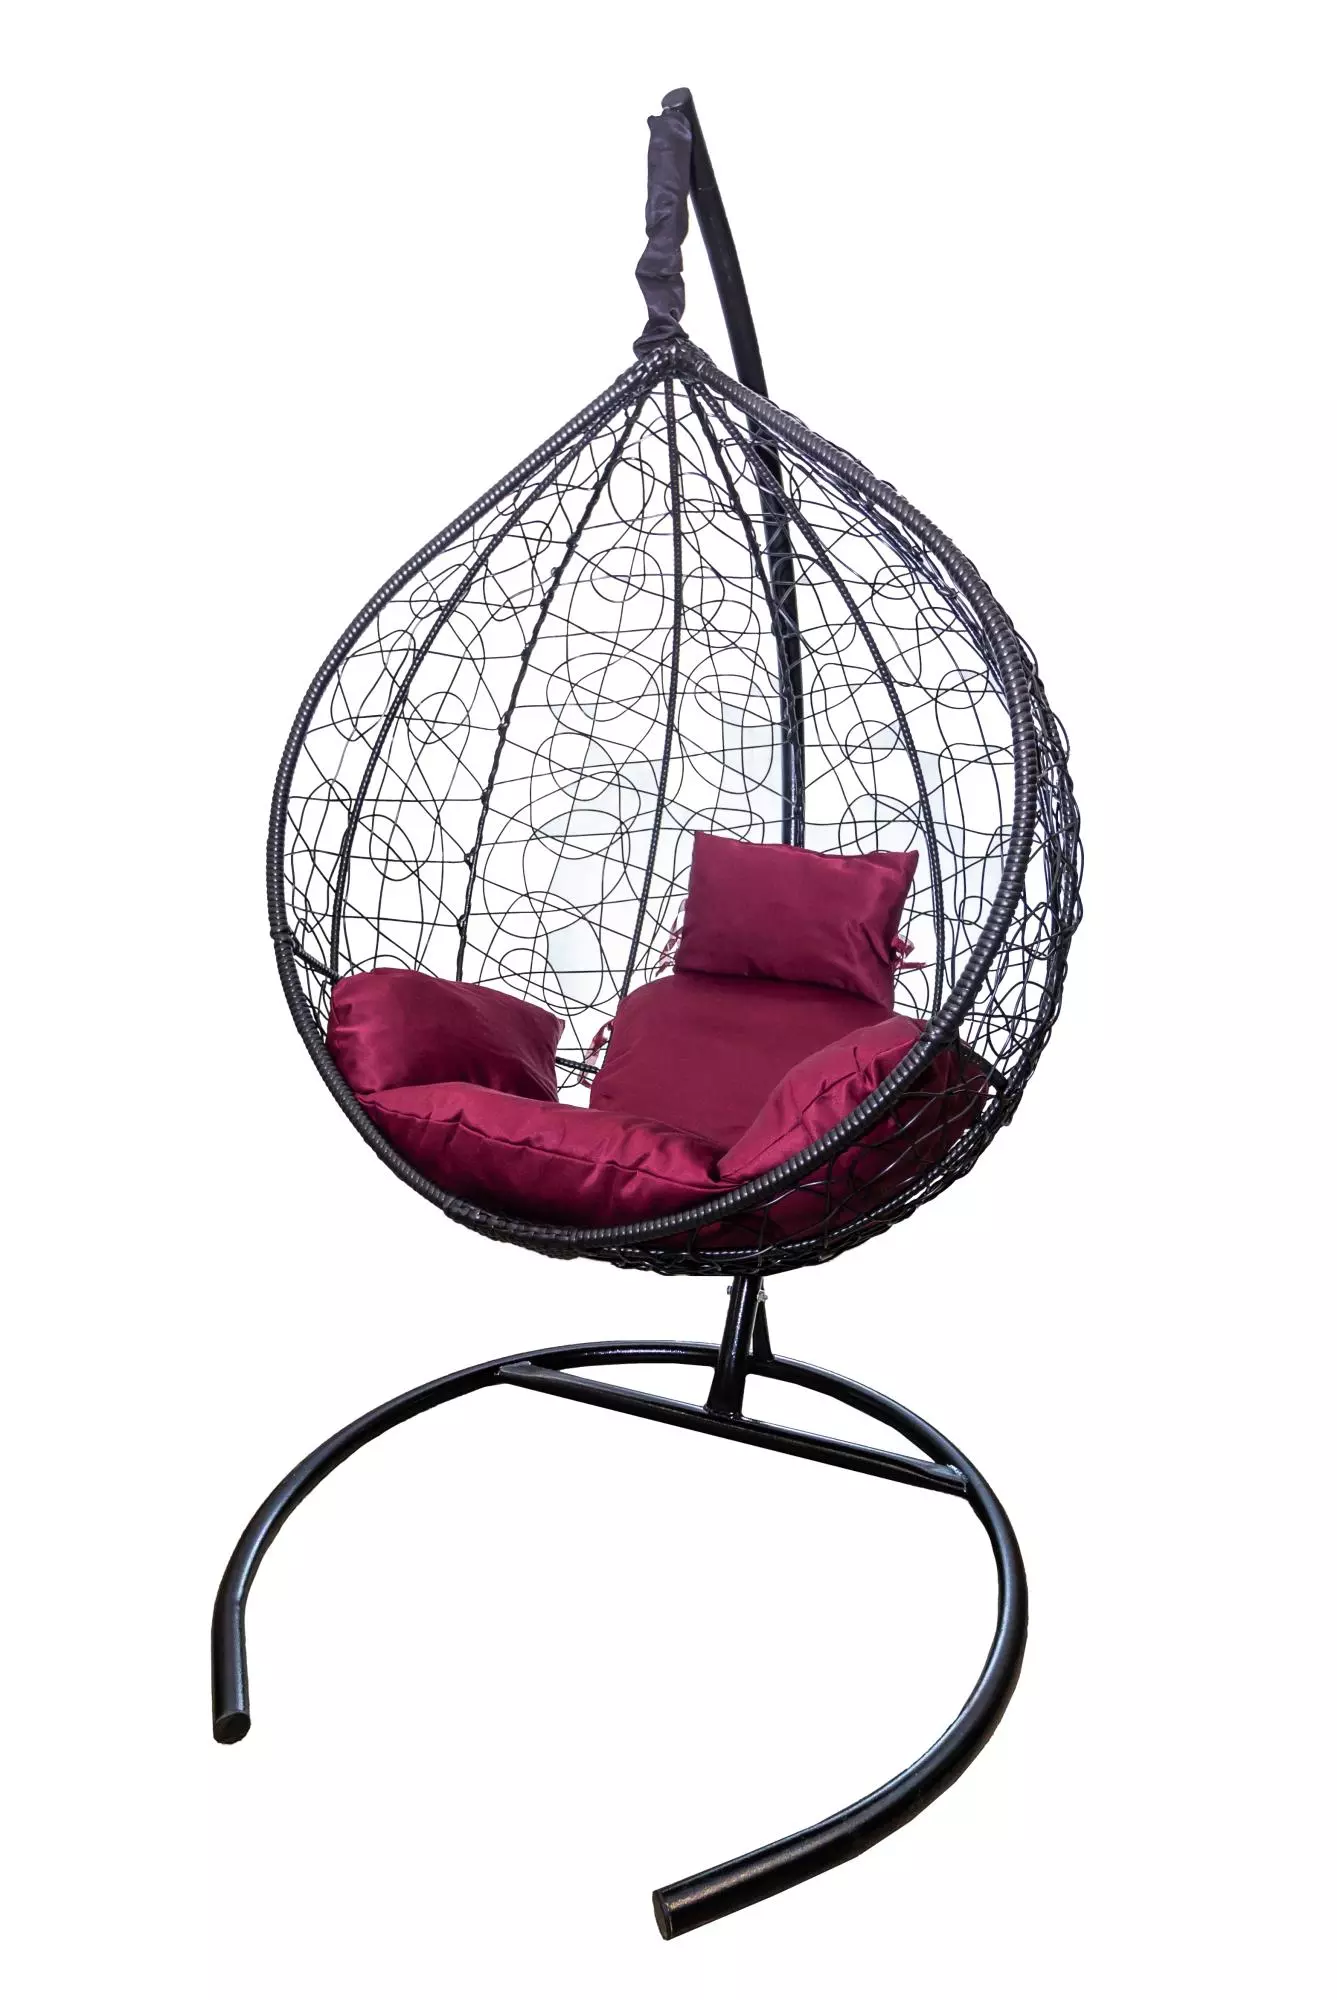 Кресло подвесное Сфера CN800-МТ цв.корзины черный, цв.подушки бордовый Garden story 